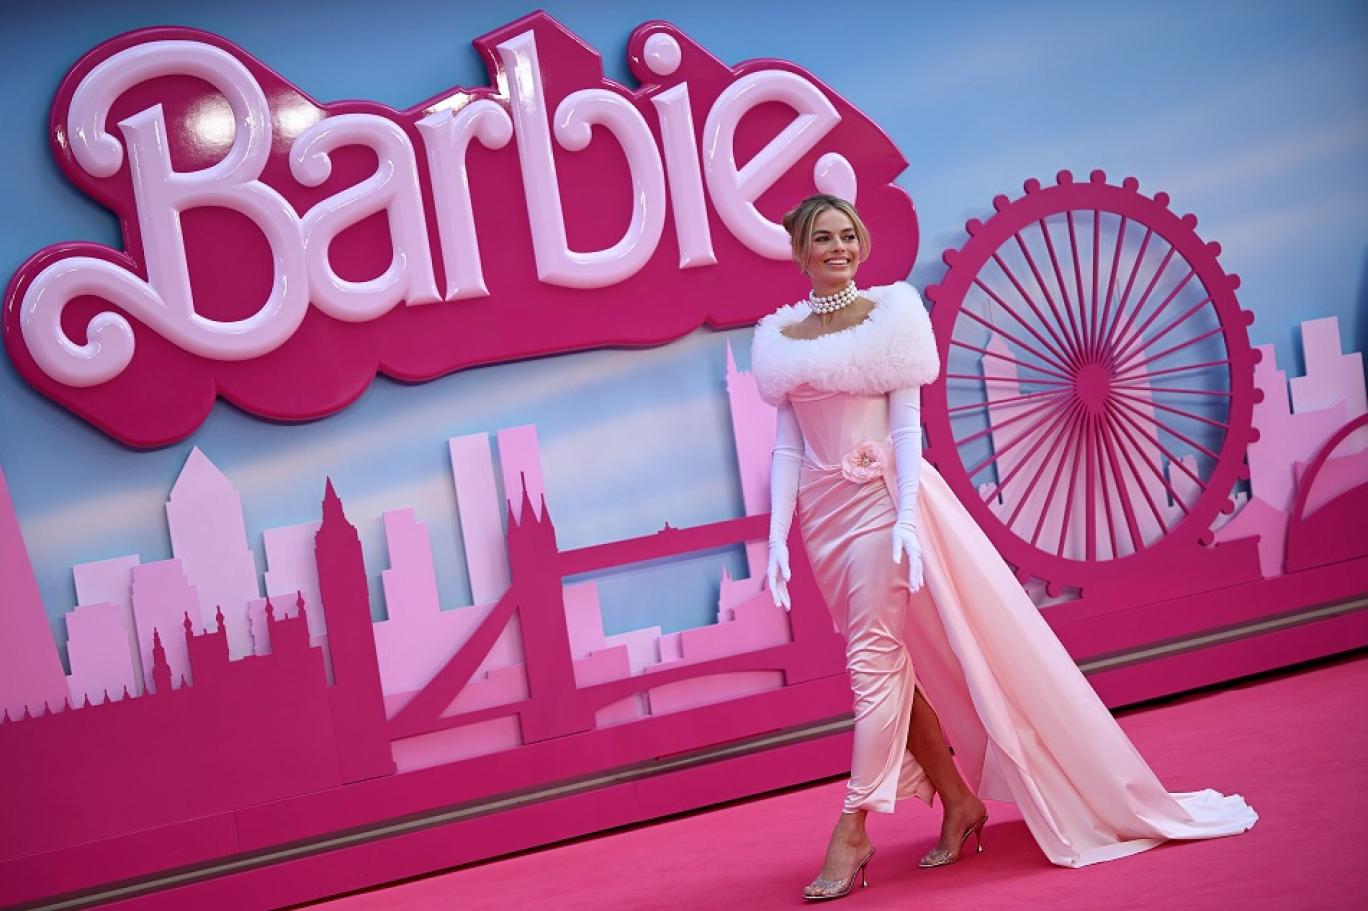 فيلم Barbie .. استخدام الخيال لإيصال رسائل غامضة